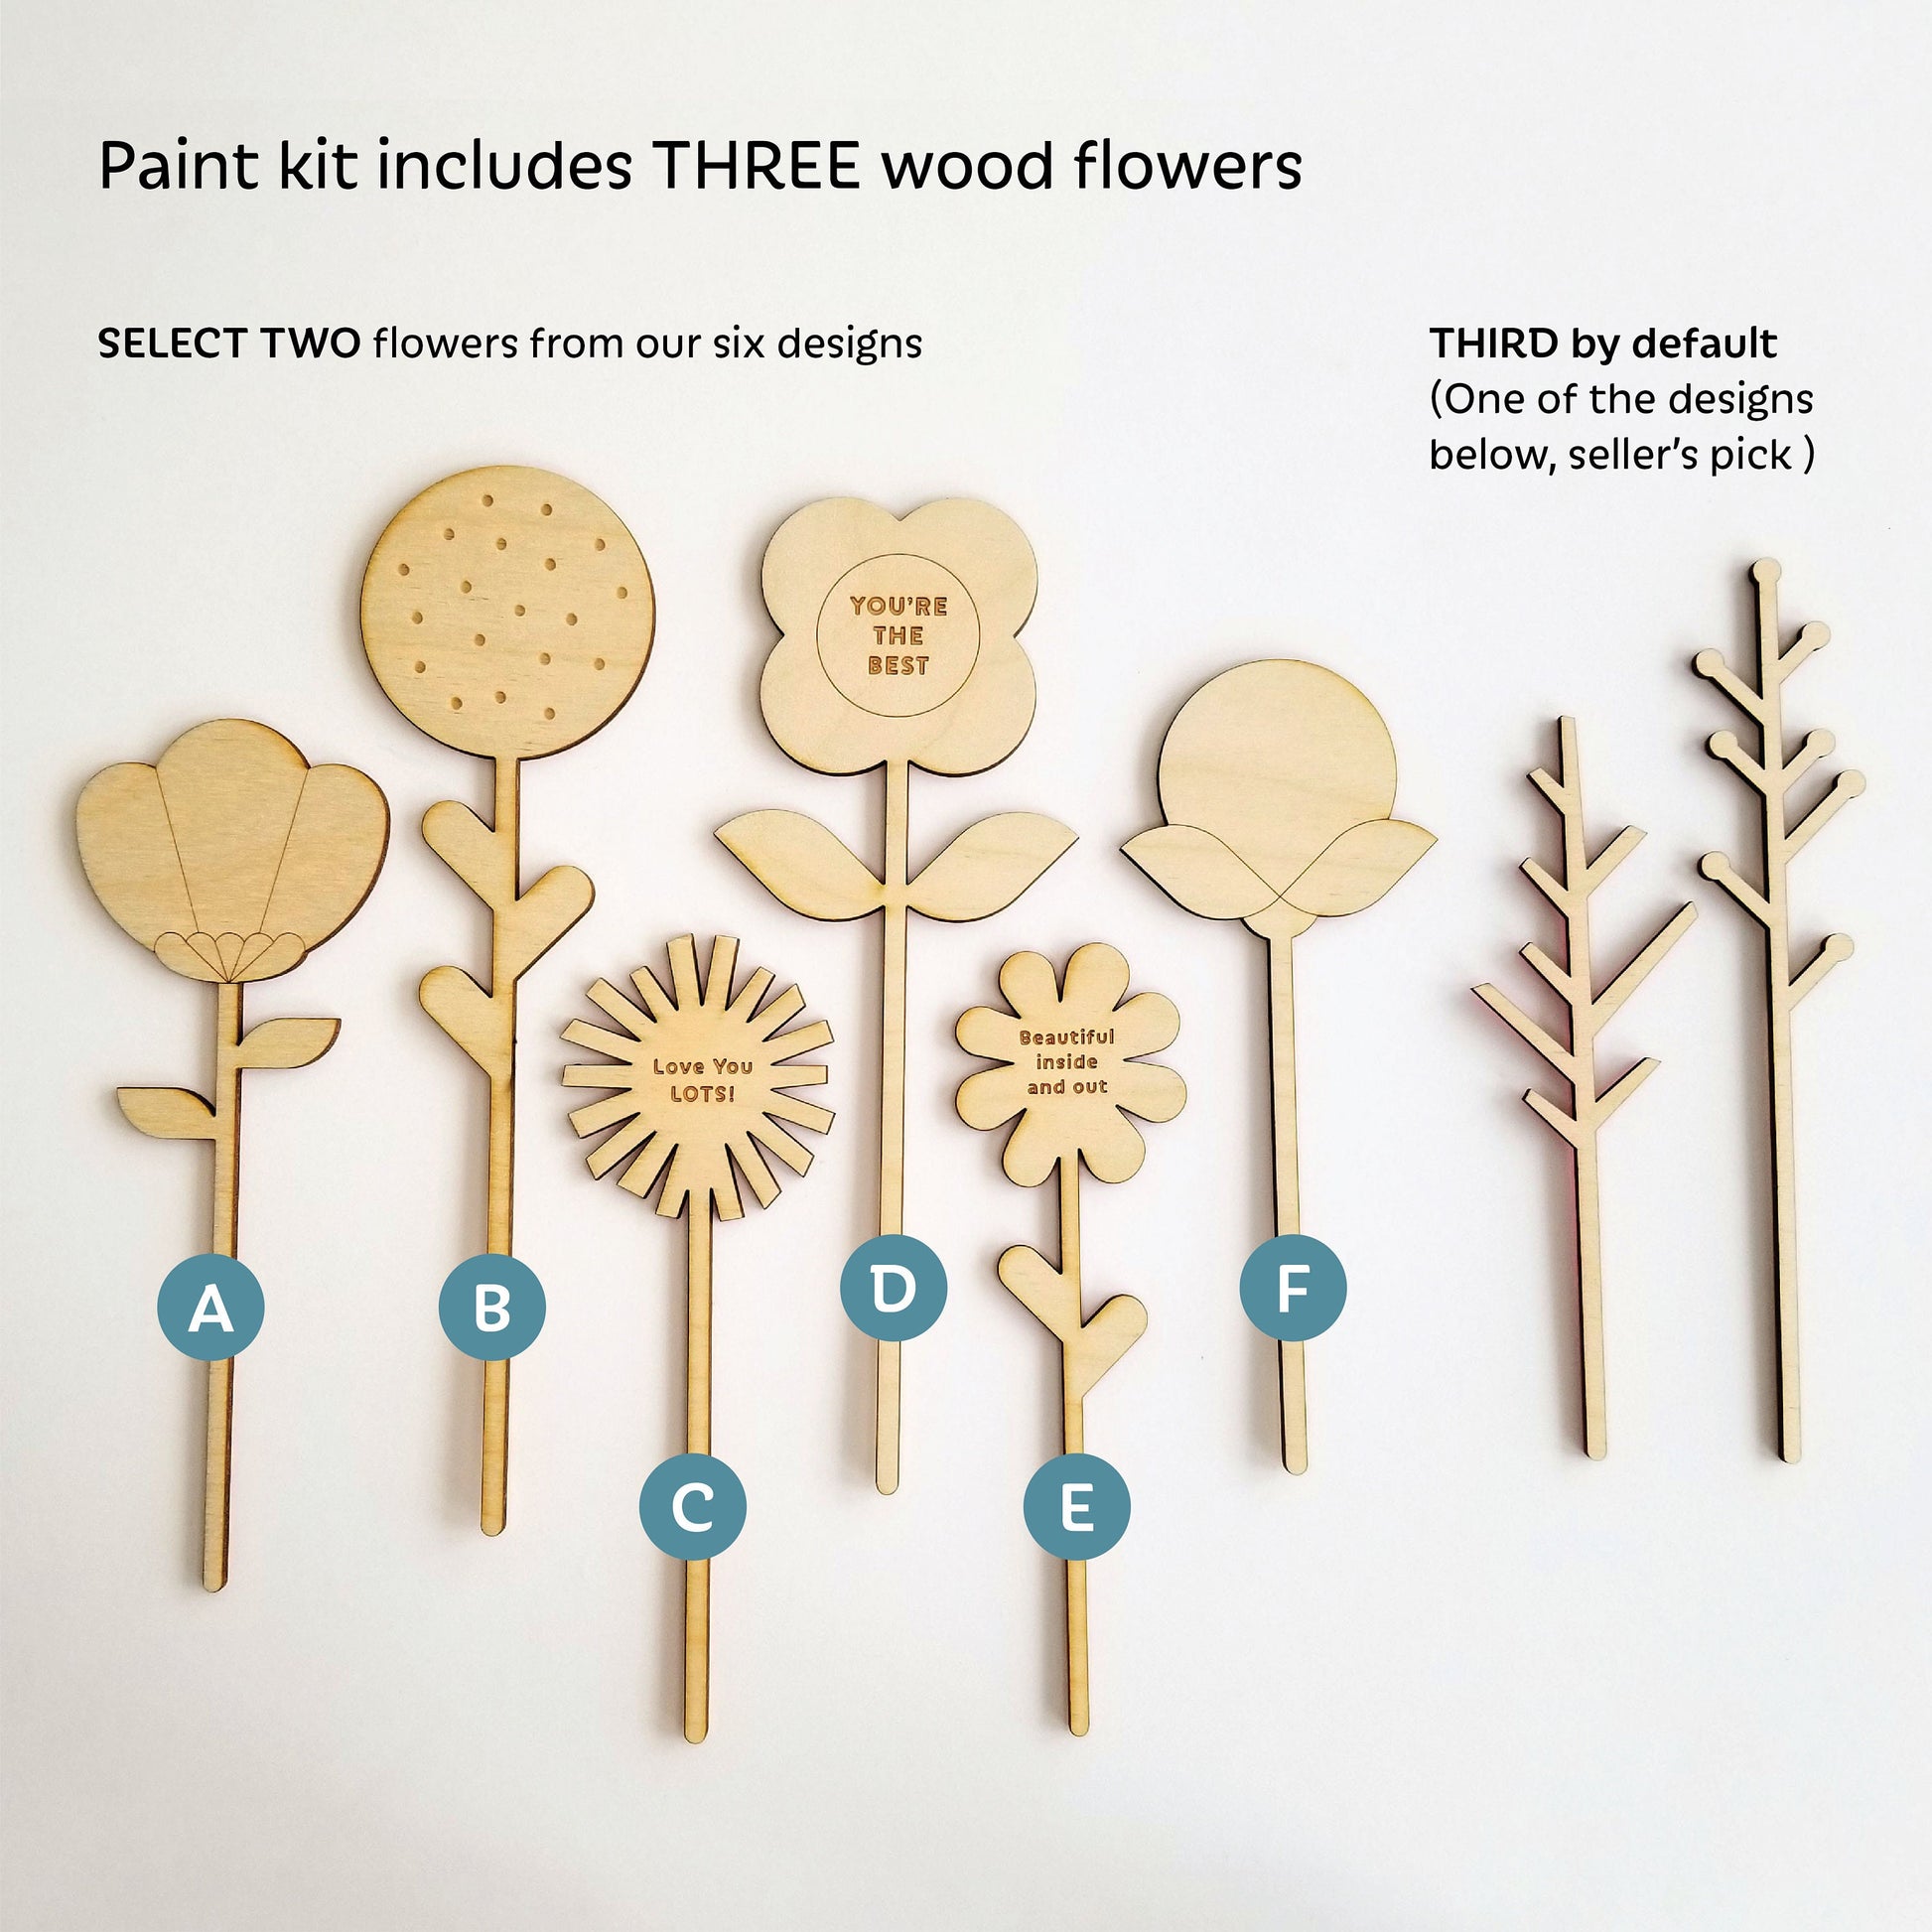 Wood Flowers Paint Kit